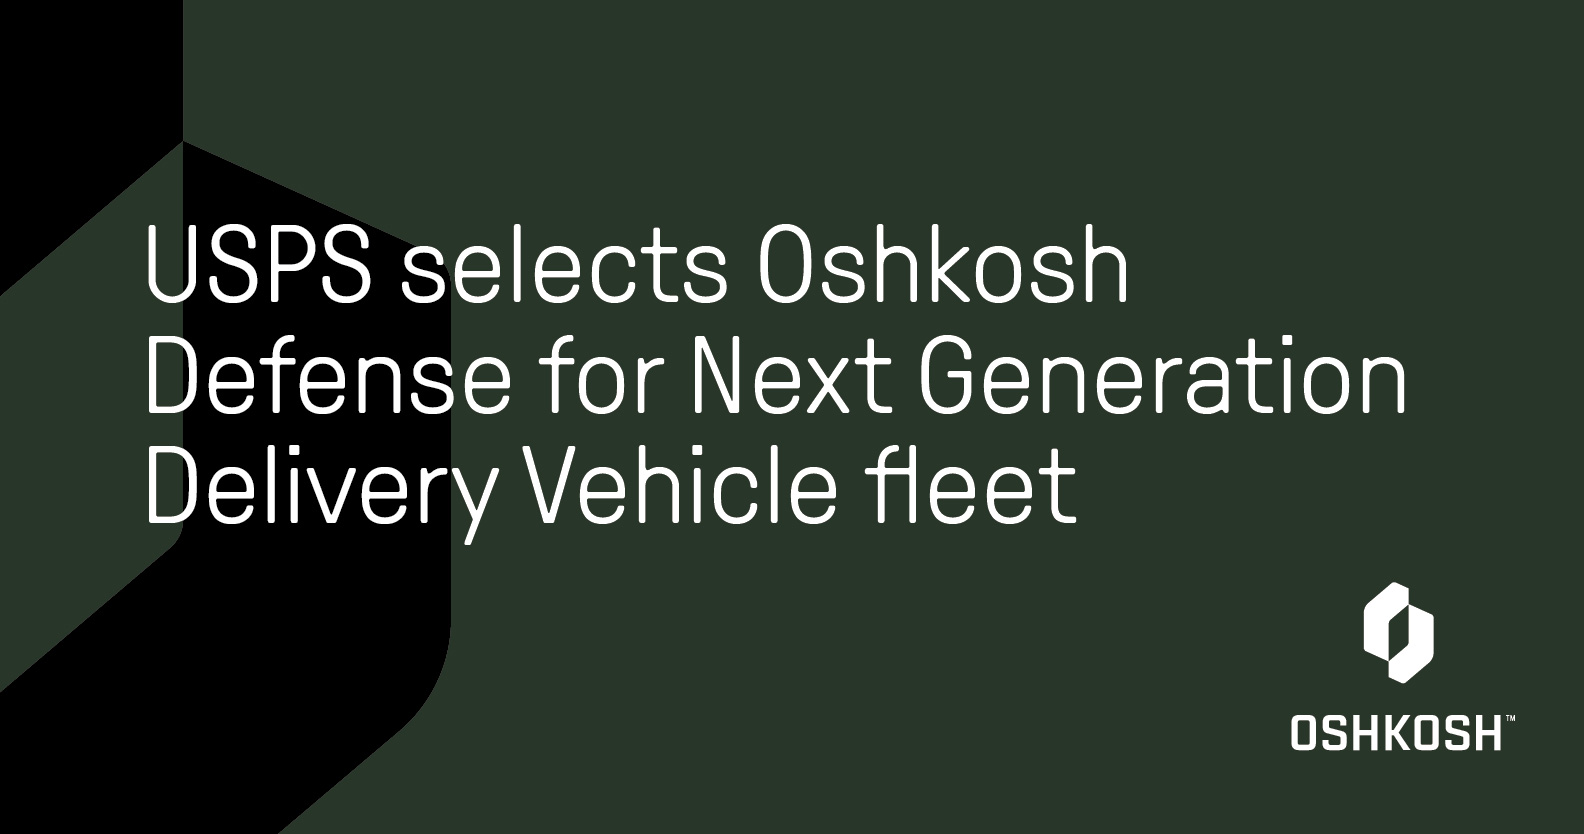 Black cropped logo on green background with white Oshkosh logo that reads USPS selects Oshkosh Defense for Next Generation Delivery Vehicle fleet